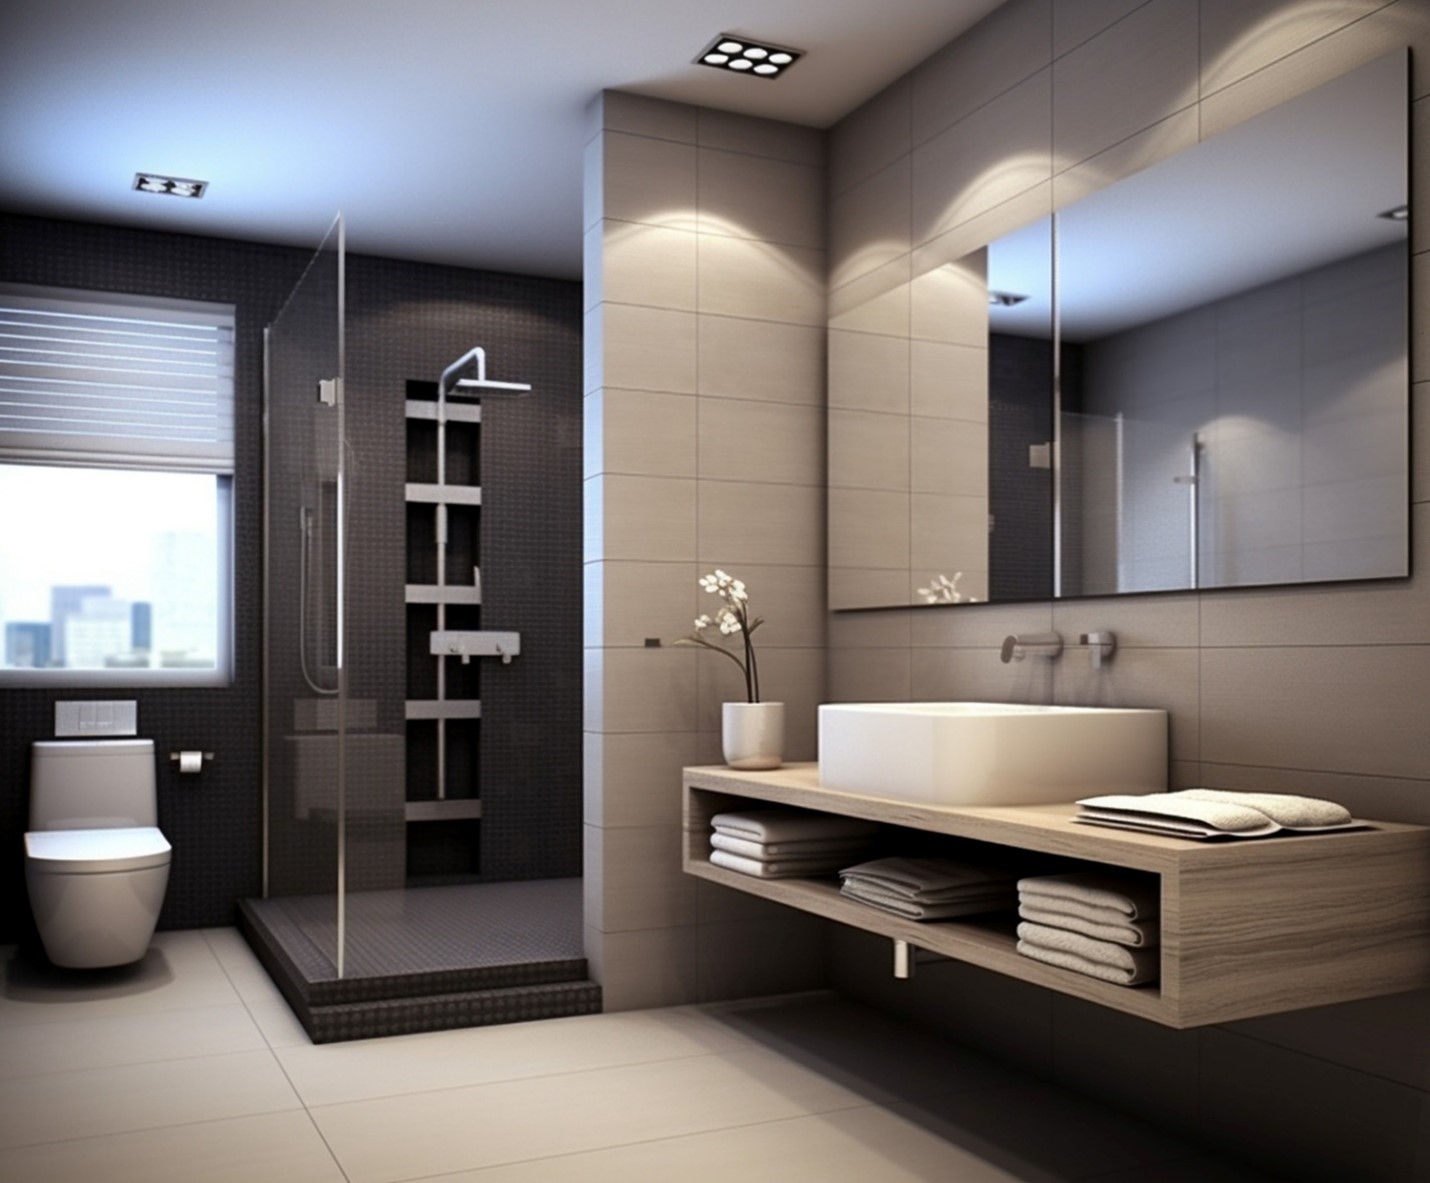 با تمرکز بر نورپردازی مناسب، سرویس بهداشتی و حمام را به فضاهایی زیبا و متعادل تبدیل کنید